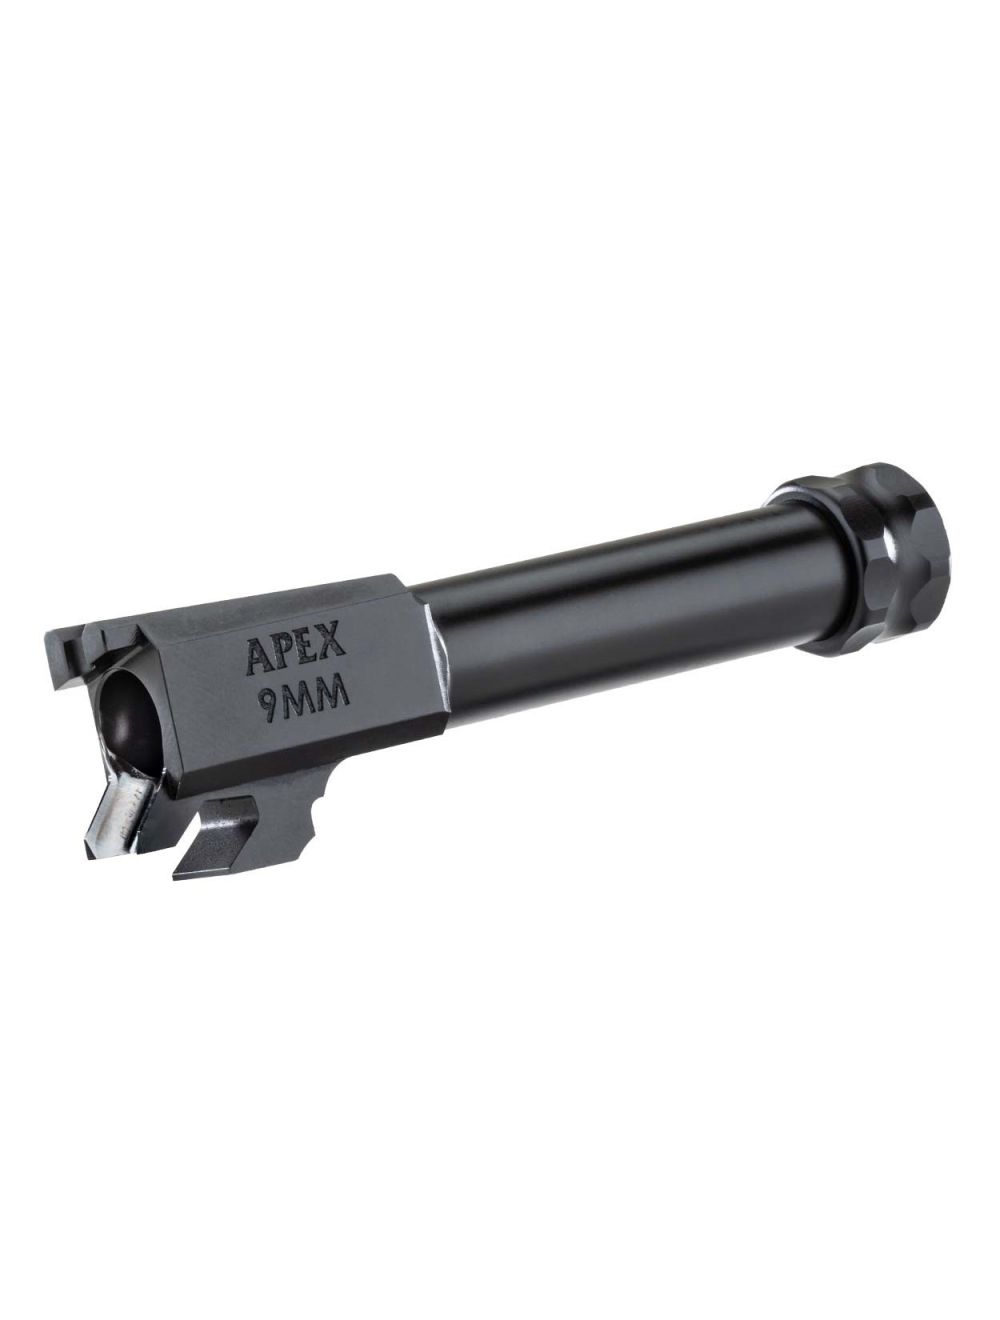 Apex 9mm Barrel for Hellcat